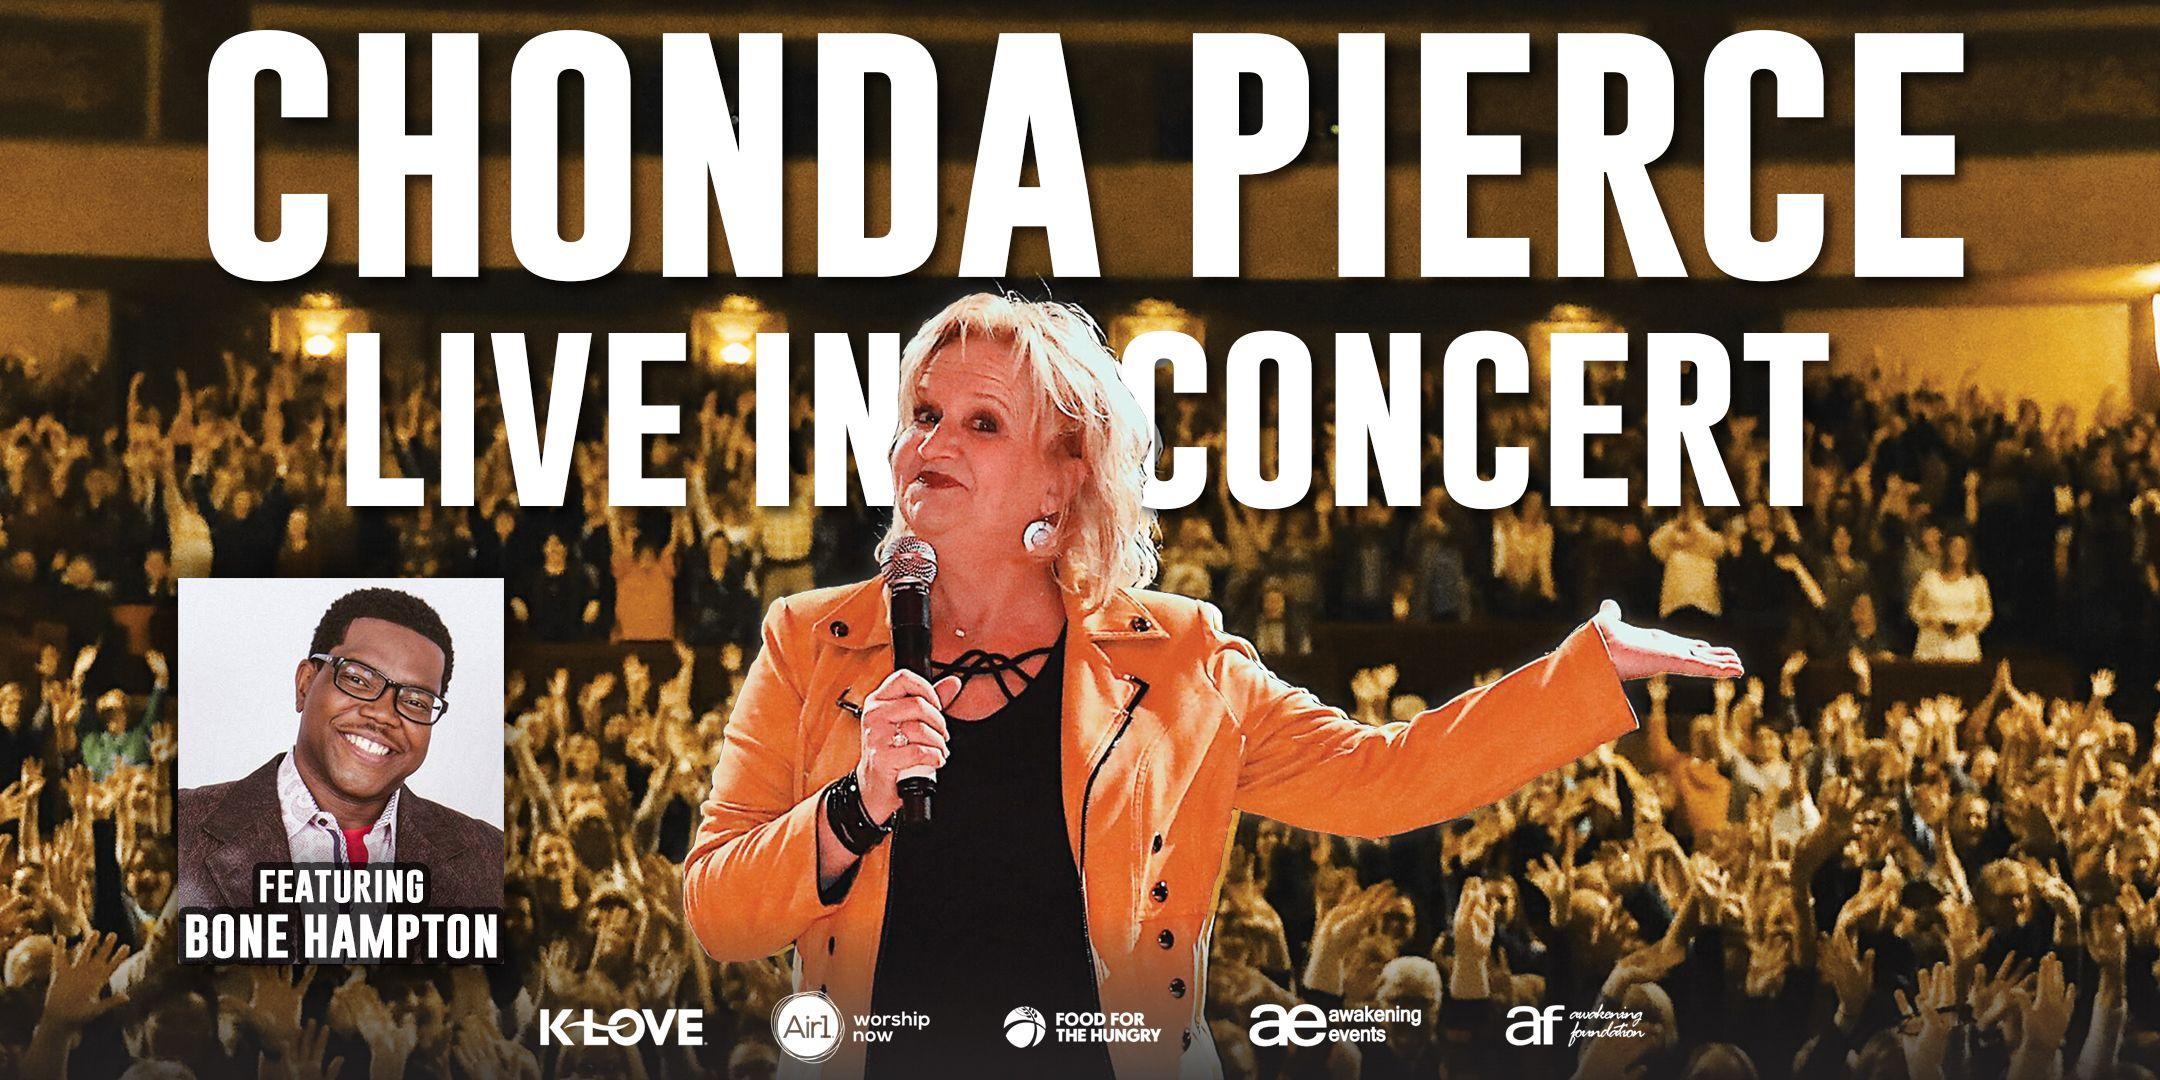 Chonda Pierce: Live in Concert